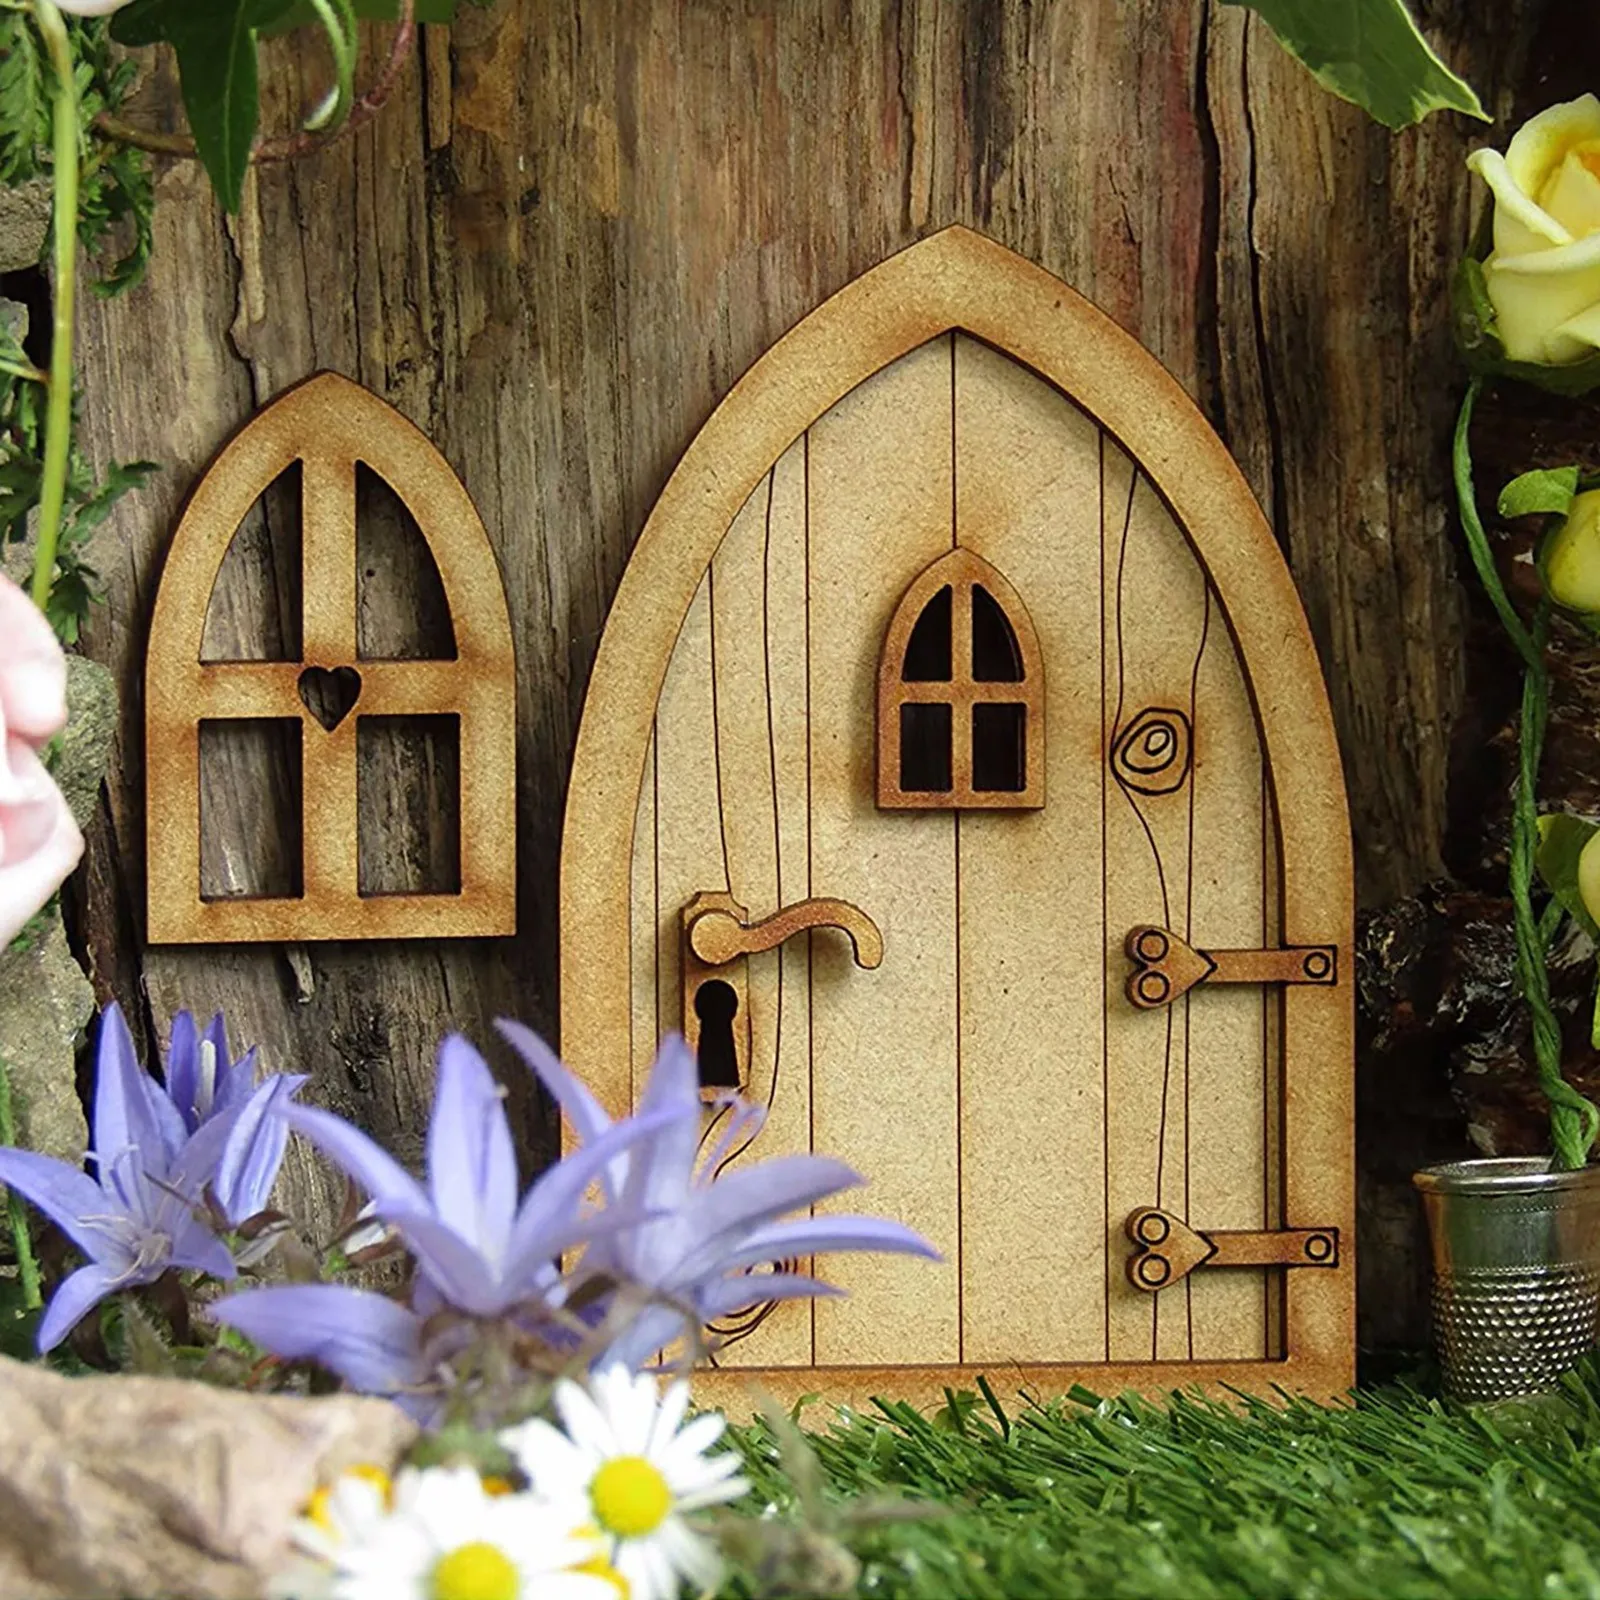 Sleeping DIY 3D DIY Door Decoration Wooden Door Craft Kit with Flowe Micro Gardening Simulation Door Cute Mini Door Home Fairy